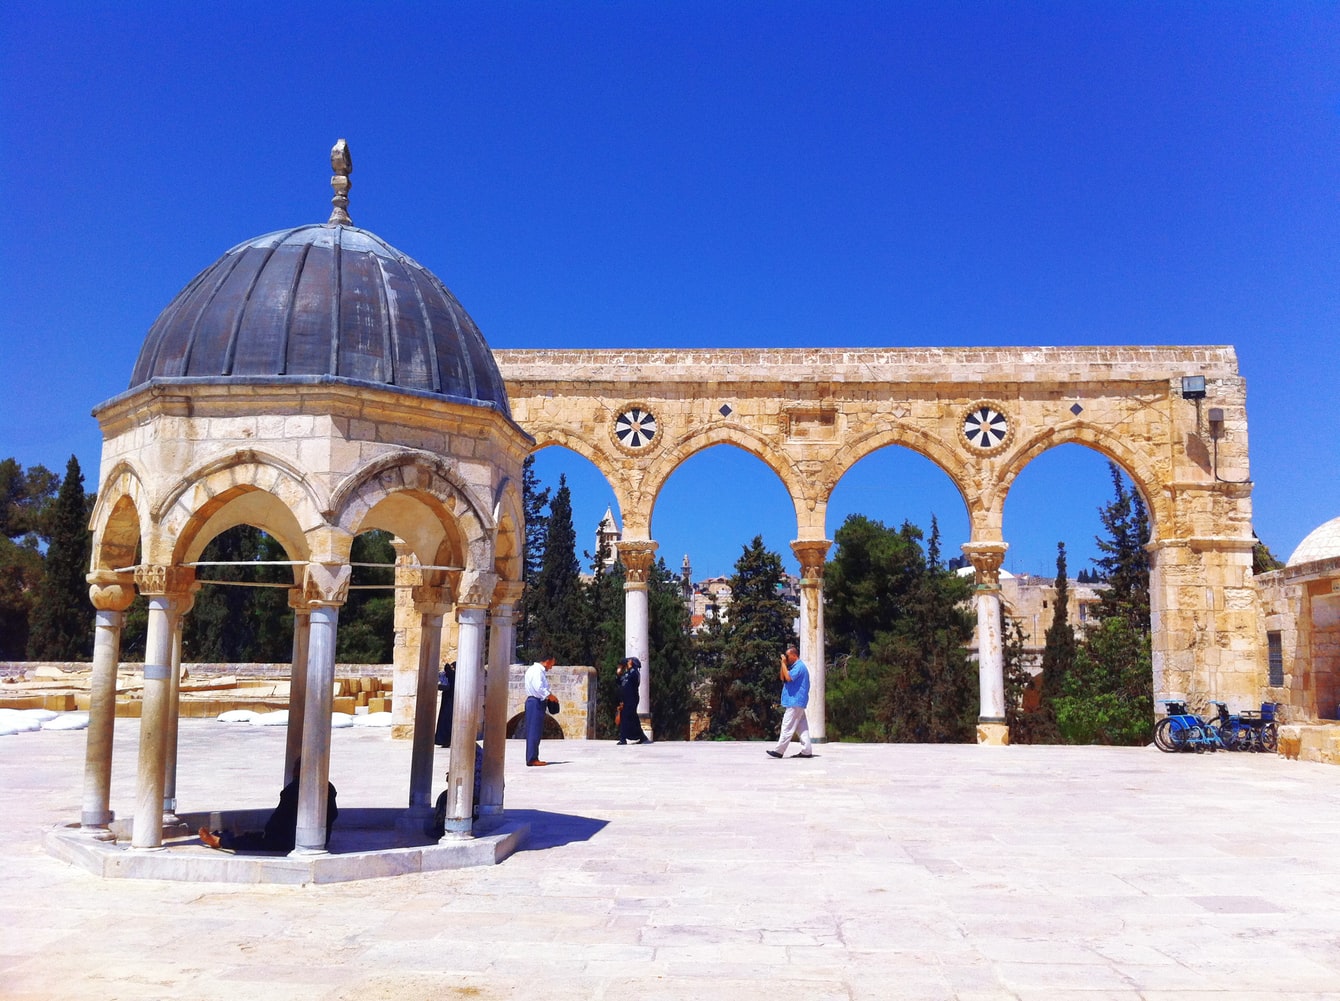 7 Fakta Masjid Al-Aqsa 4 fakta masjid al-aqsa